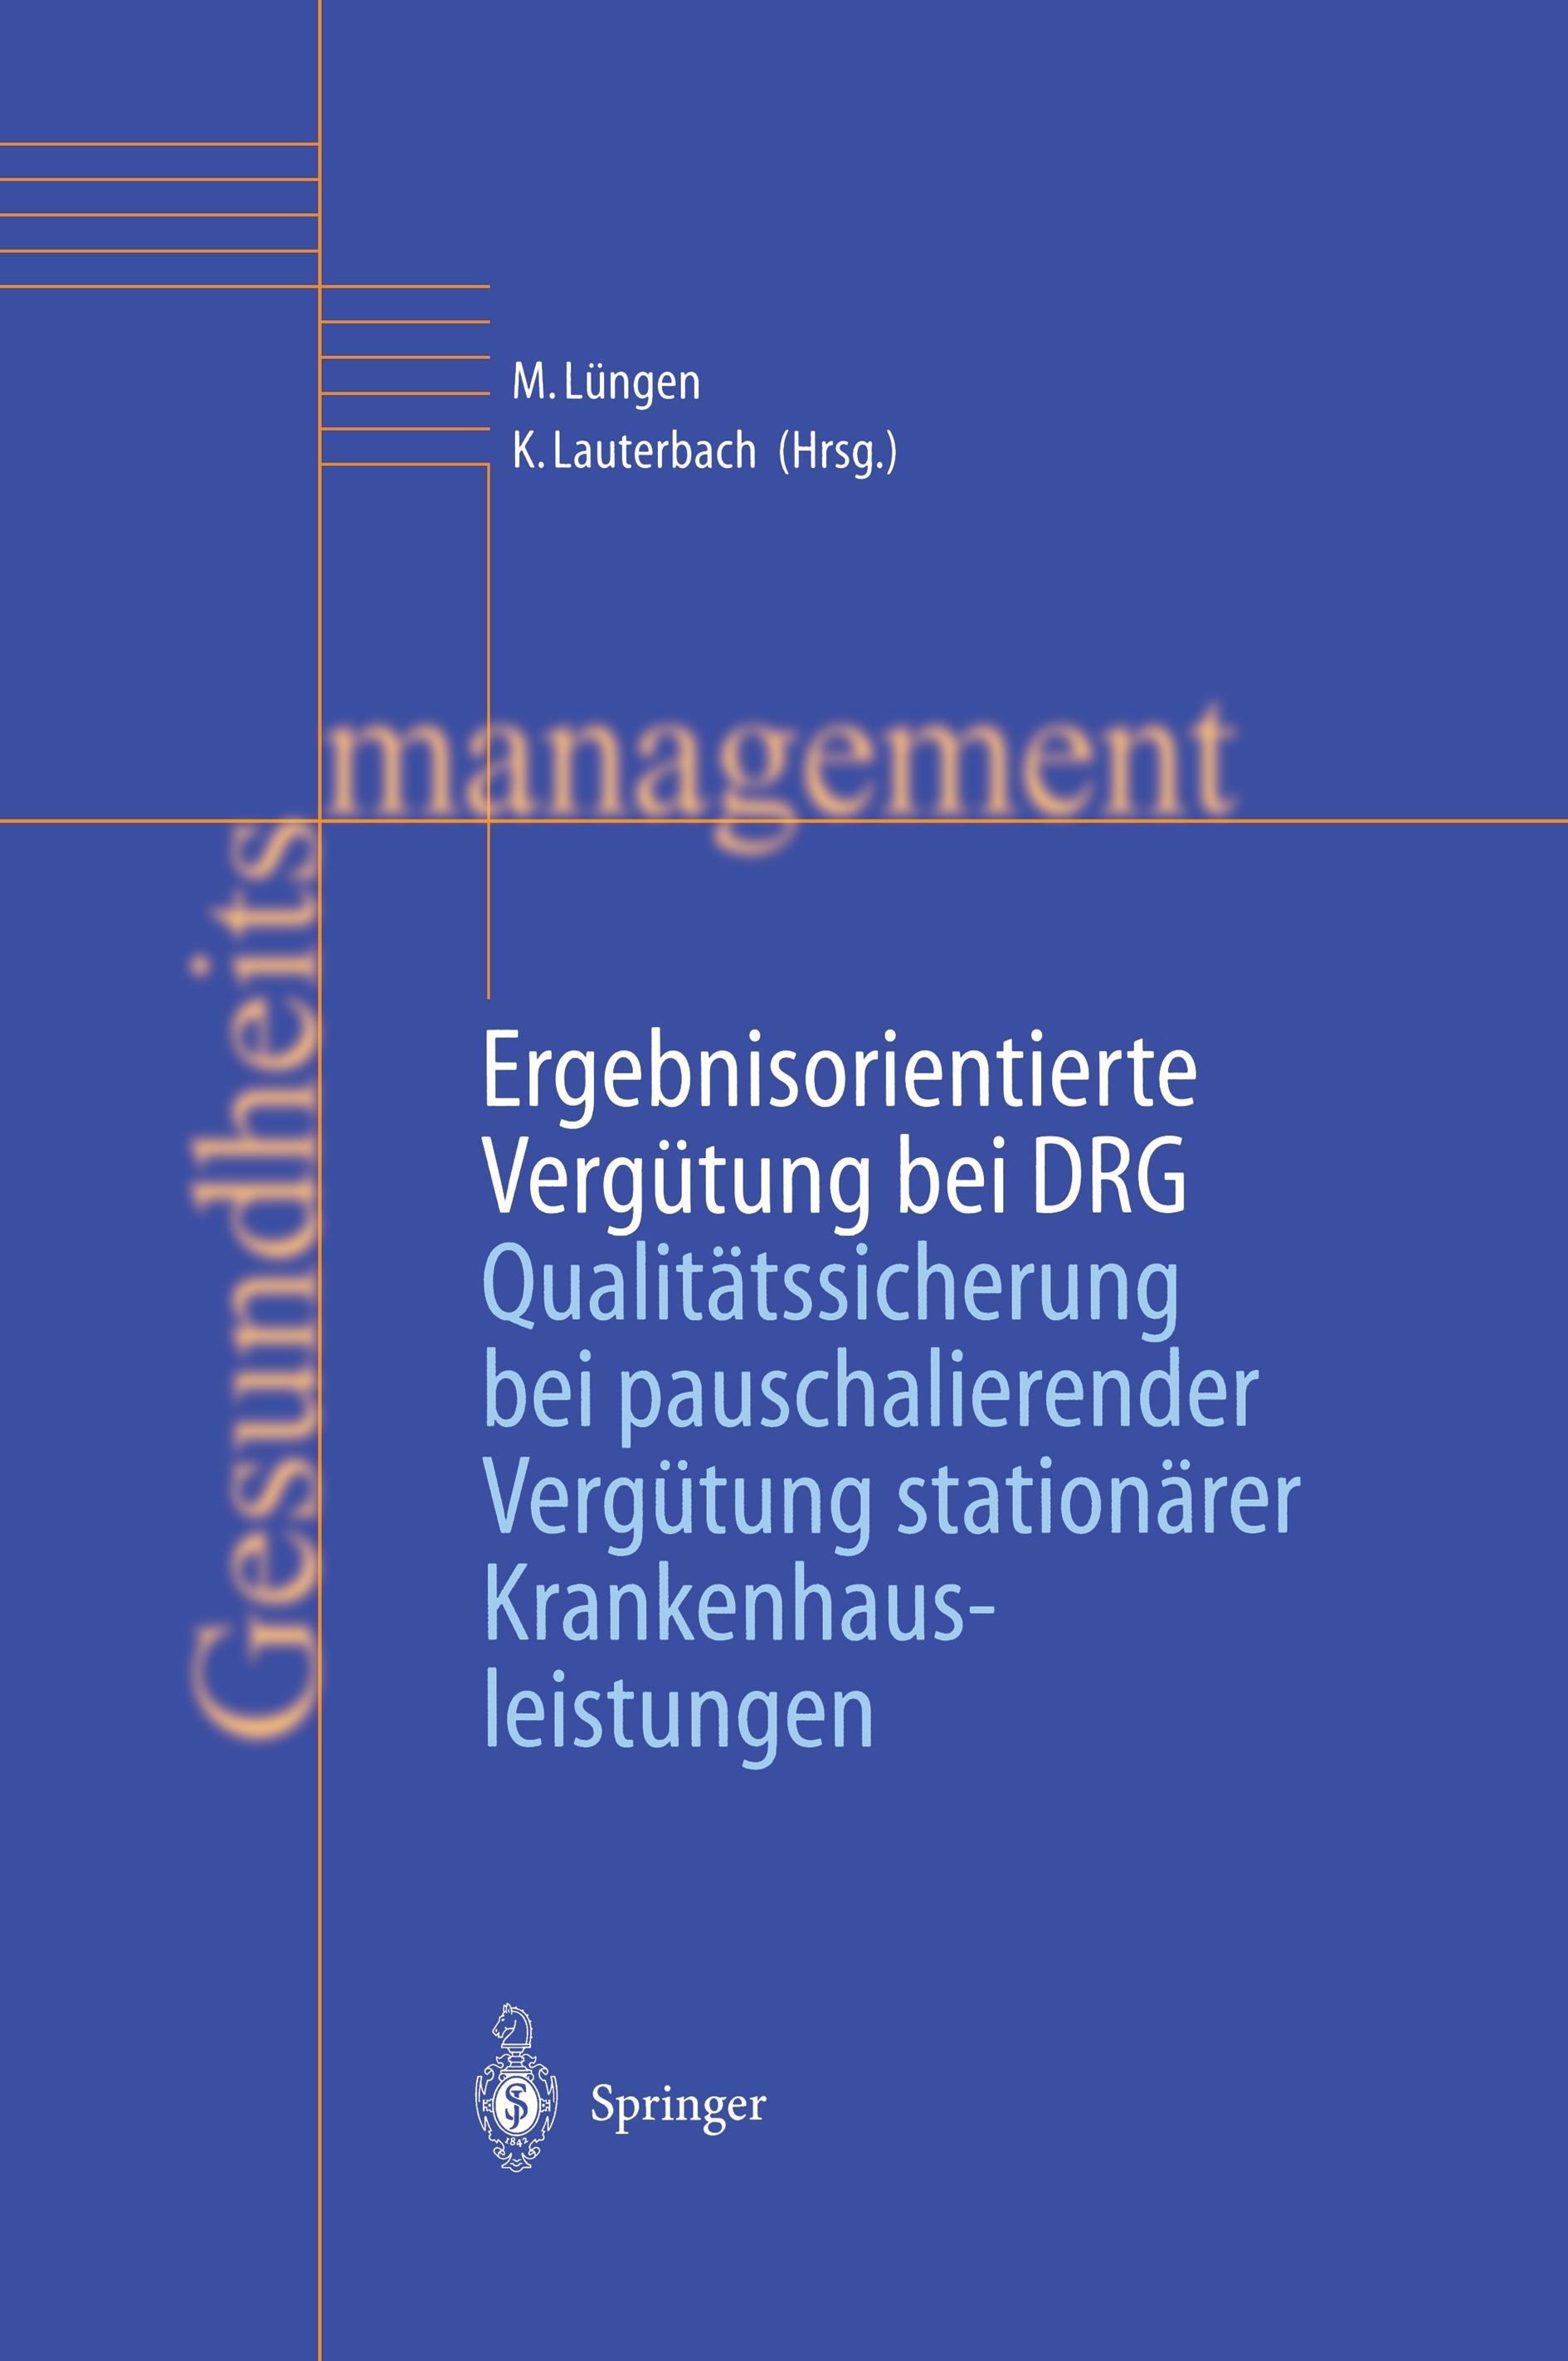 Ergebnisorientierte Vergütung bei DRG Lüngen, Markus Lauterbach, Karl Gesundhe.. - Karl Lauterbach, Markus Lüngen